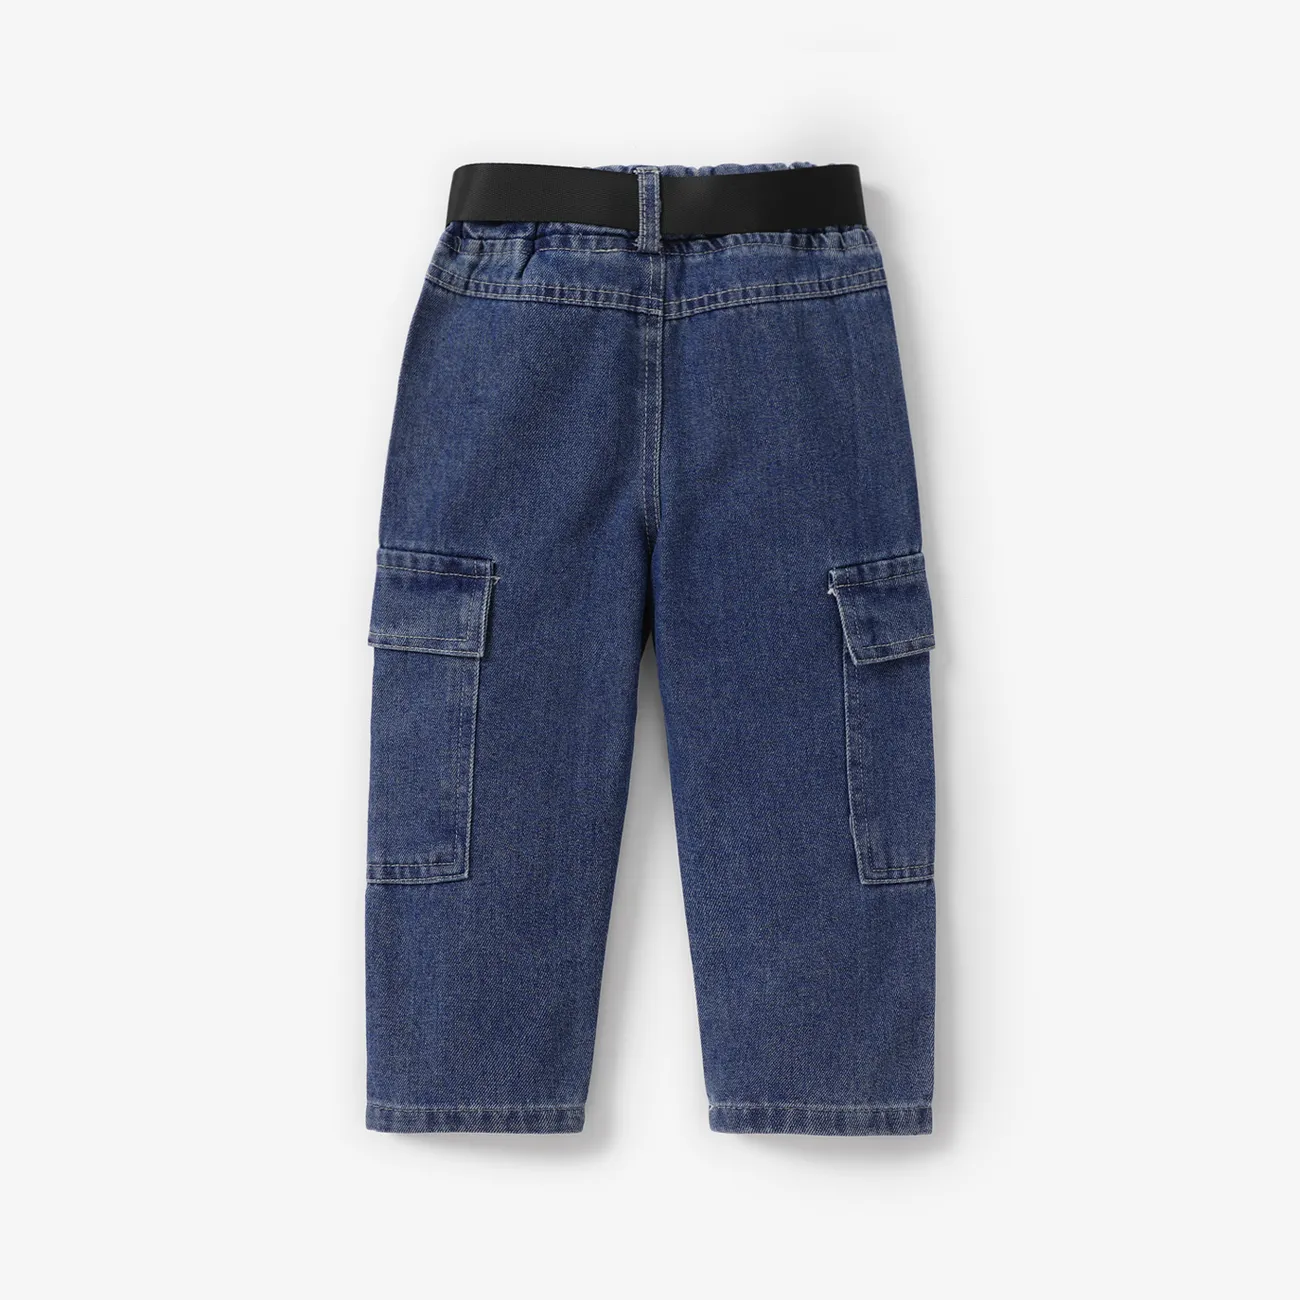 Toddler Boy/Girl Trendy Patch Pocket Denim Jeans(With Belt) Blue big image 1